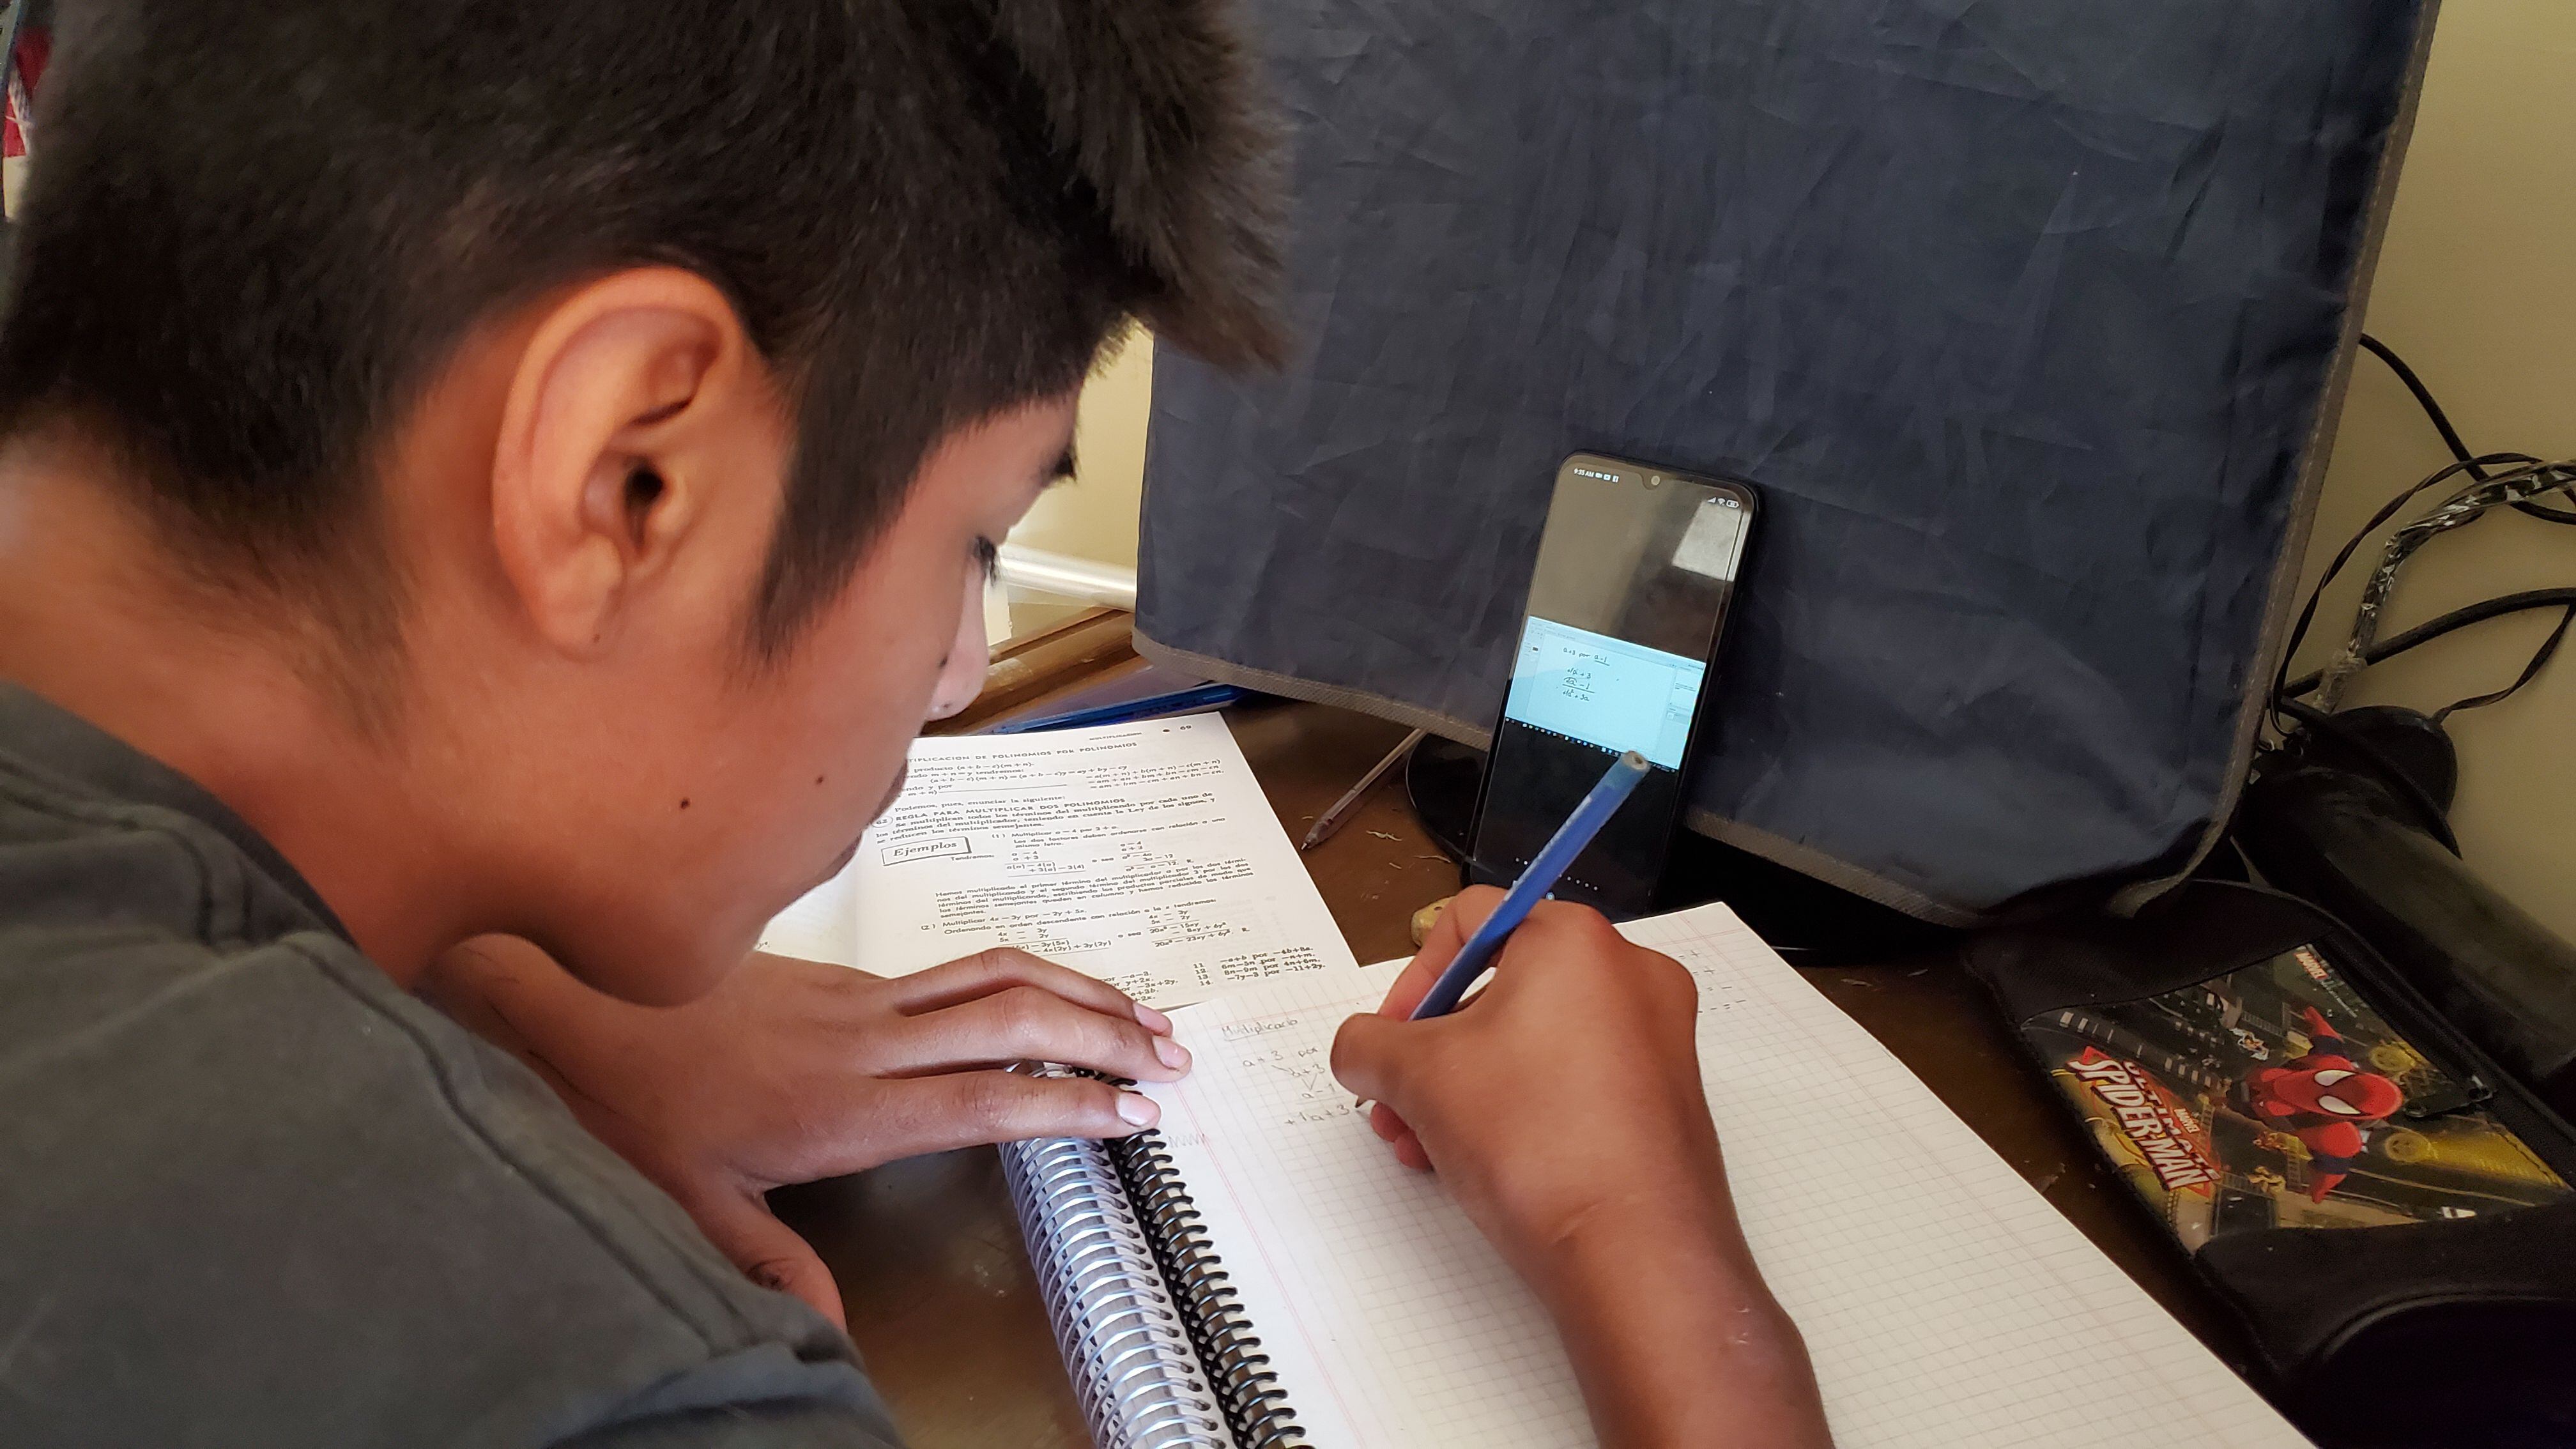 Luis Fernando Pardo, de 14 años, forma parte de una clase virtual de Matemáticas, a través de la plataforma Zoom, desde su casa en Cochabamba, Bolivia.